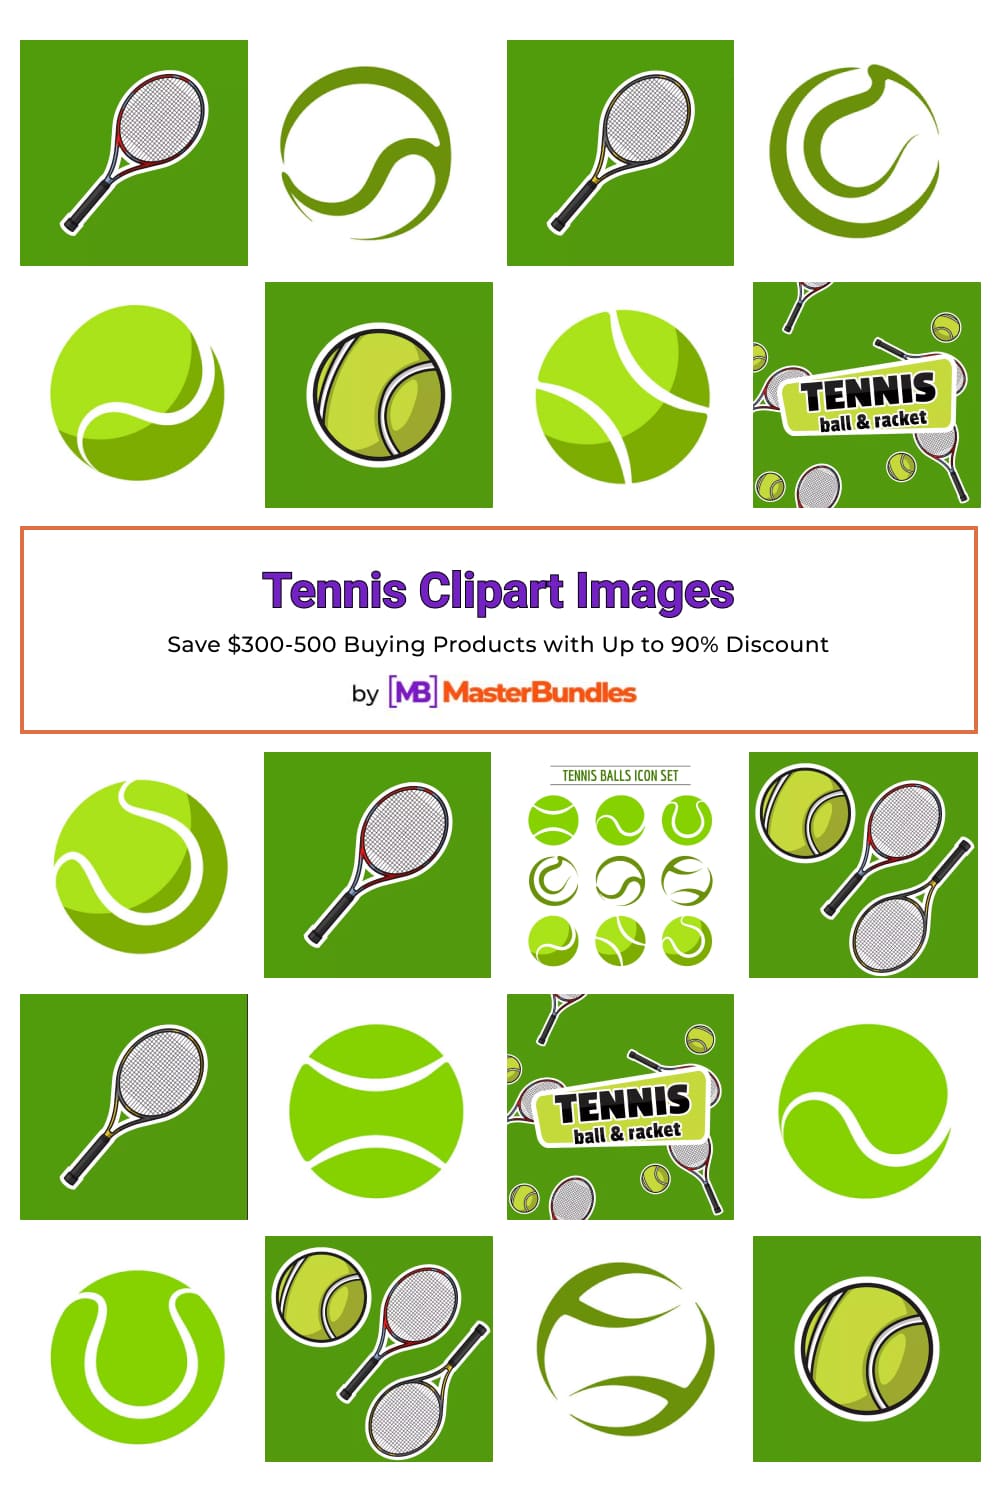 Tennis Clipart Images Pinterest image.